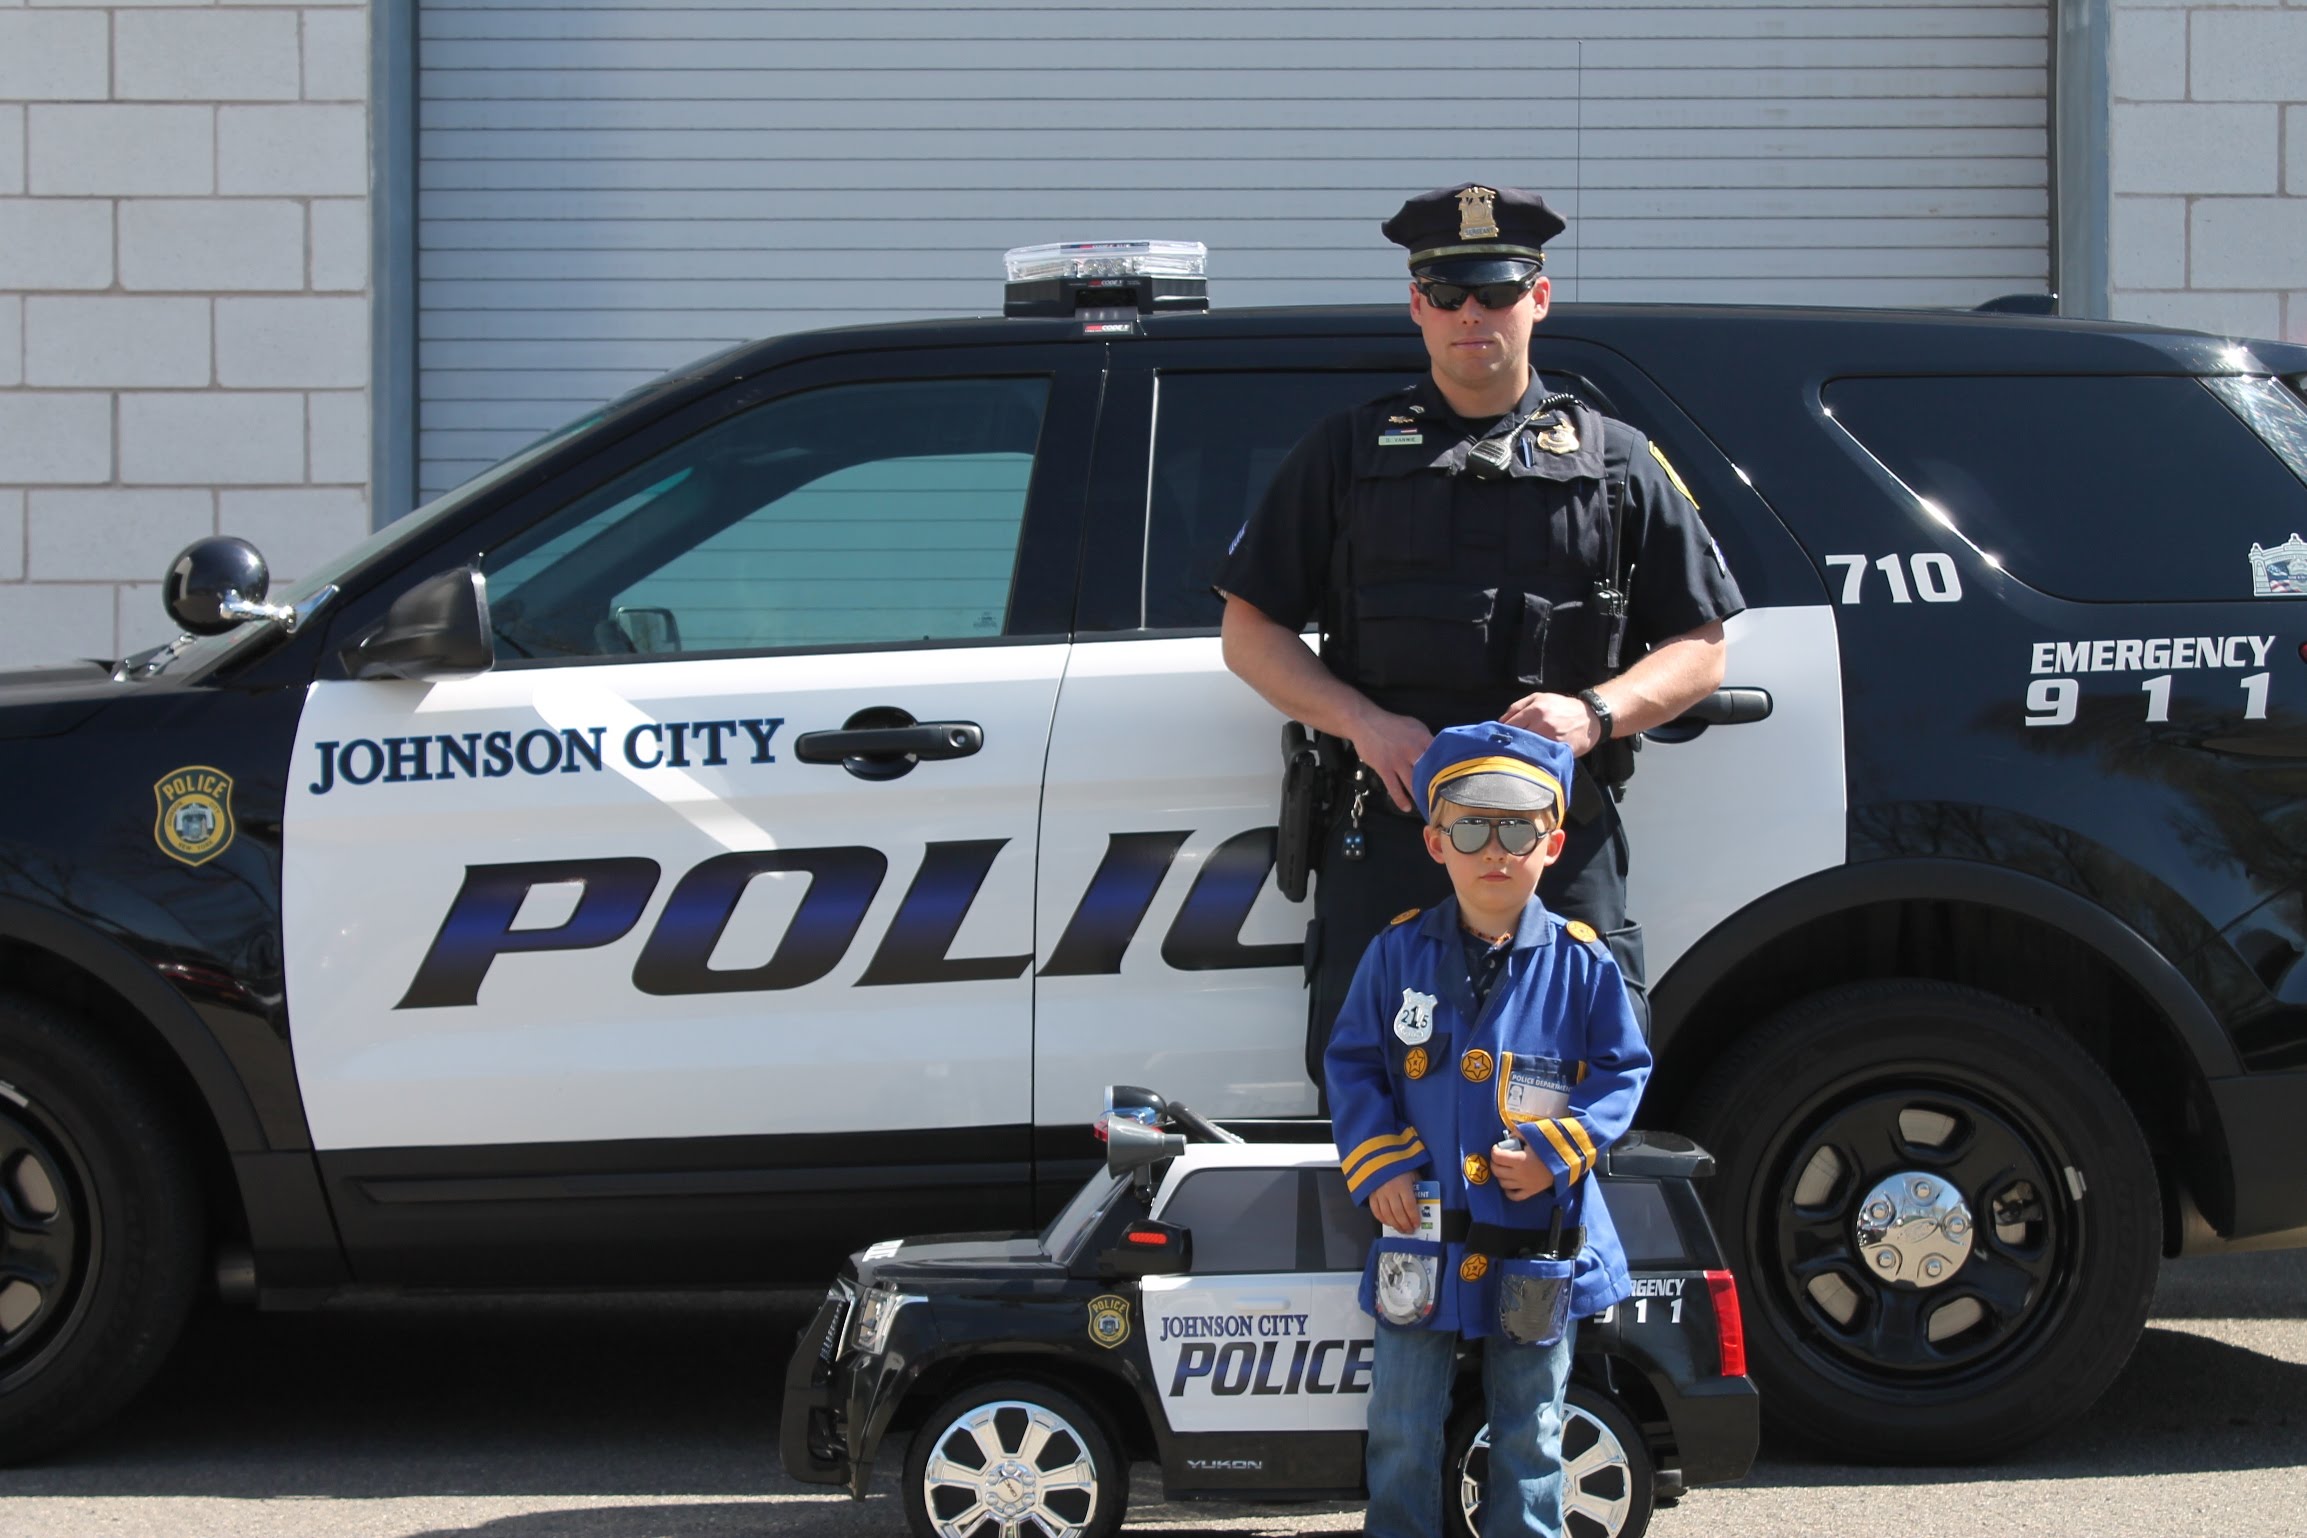 Johnson City Police Association, NY Kid's Police Car Raffle - YouTube